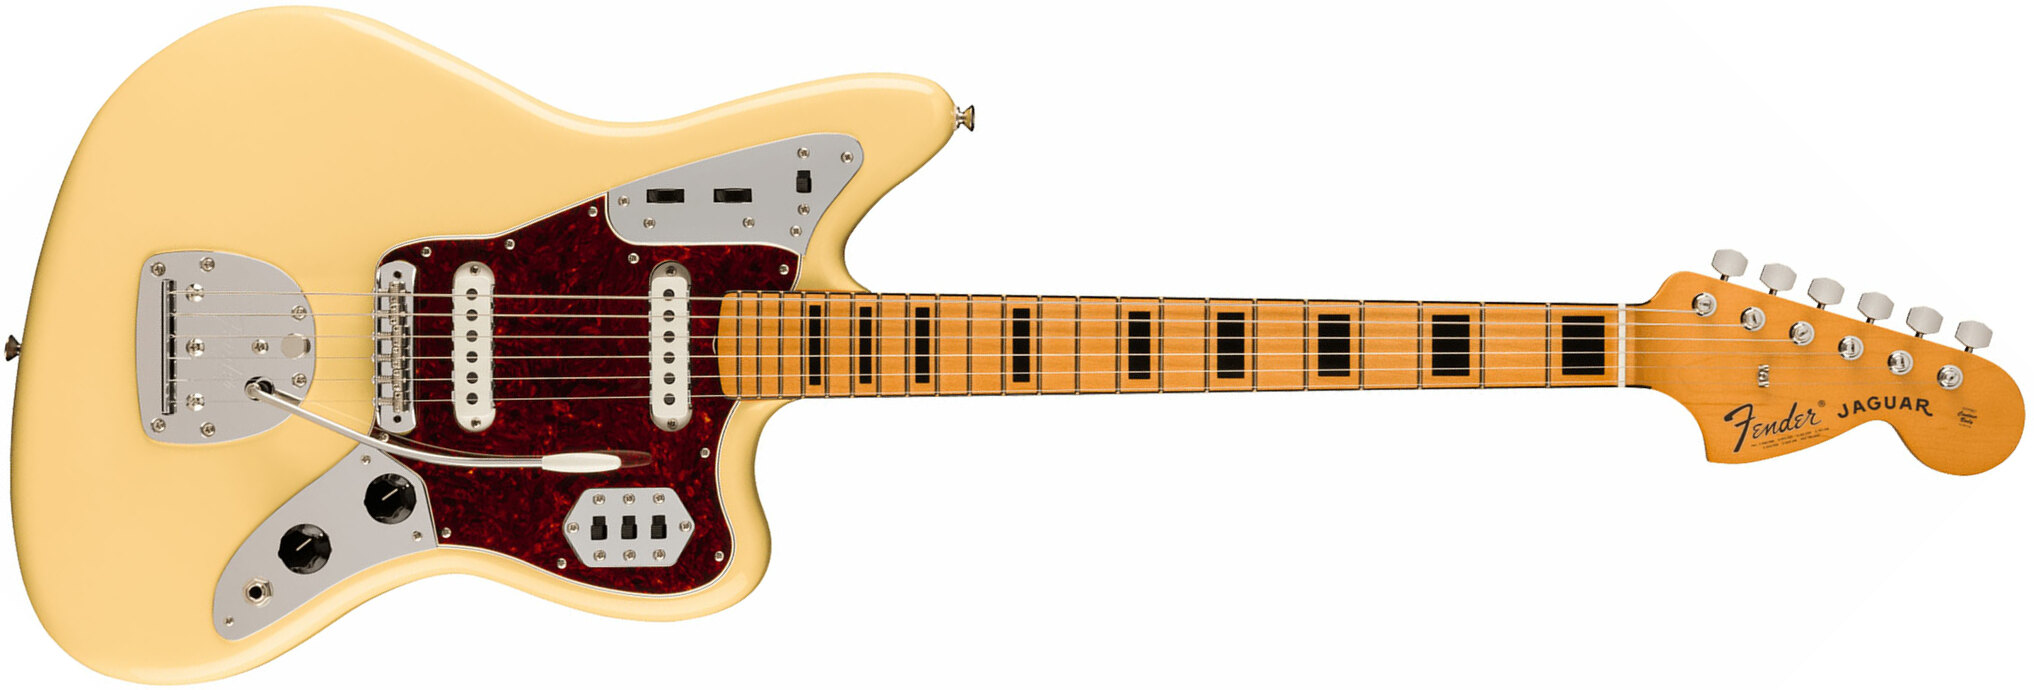 Fender Jaguar 70s Vintera 2 Mex 2s Trem Mn - Vintage White - Guitarra electrica retro rock - Main picture